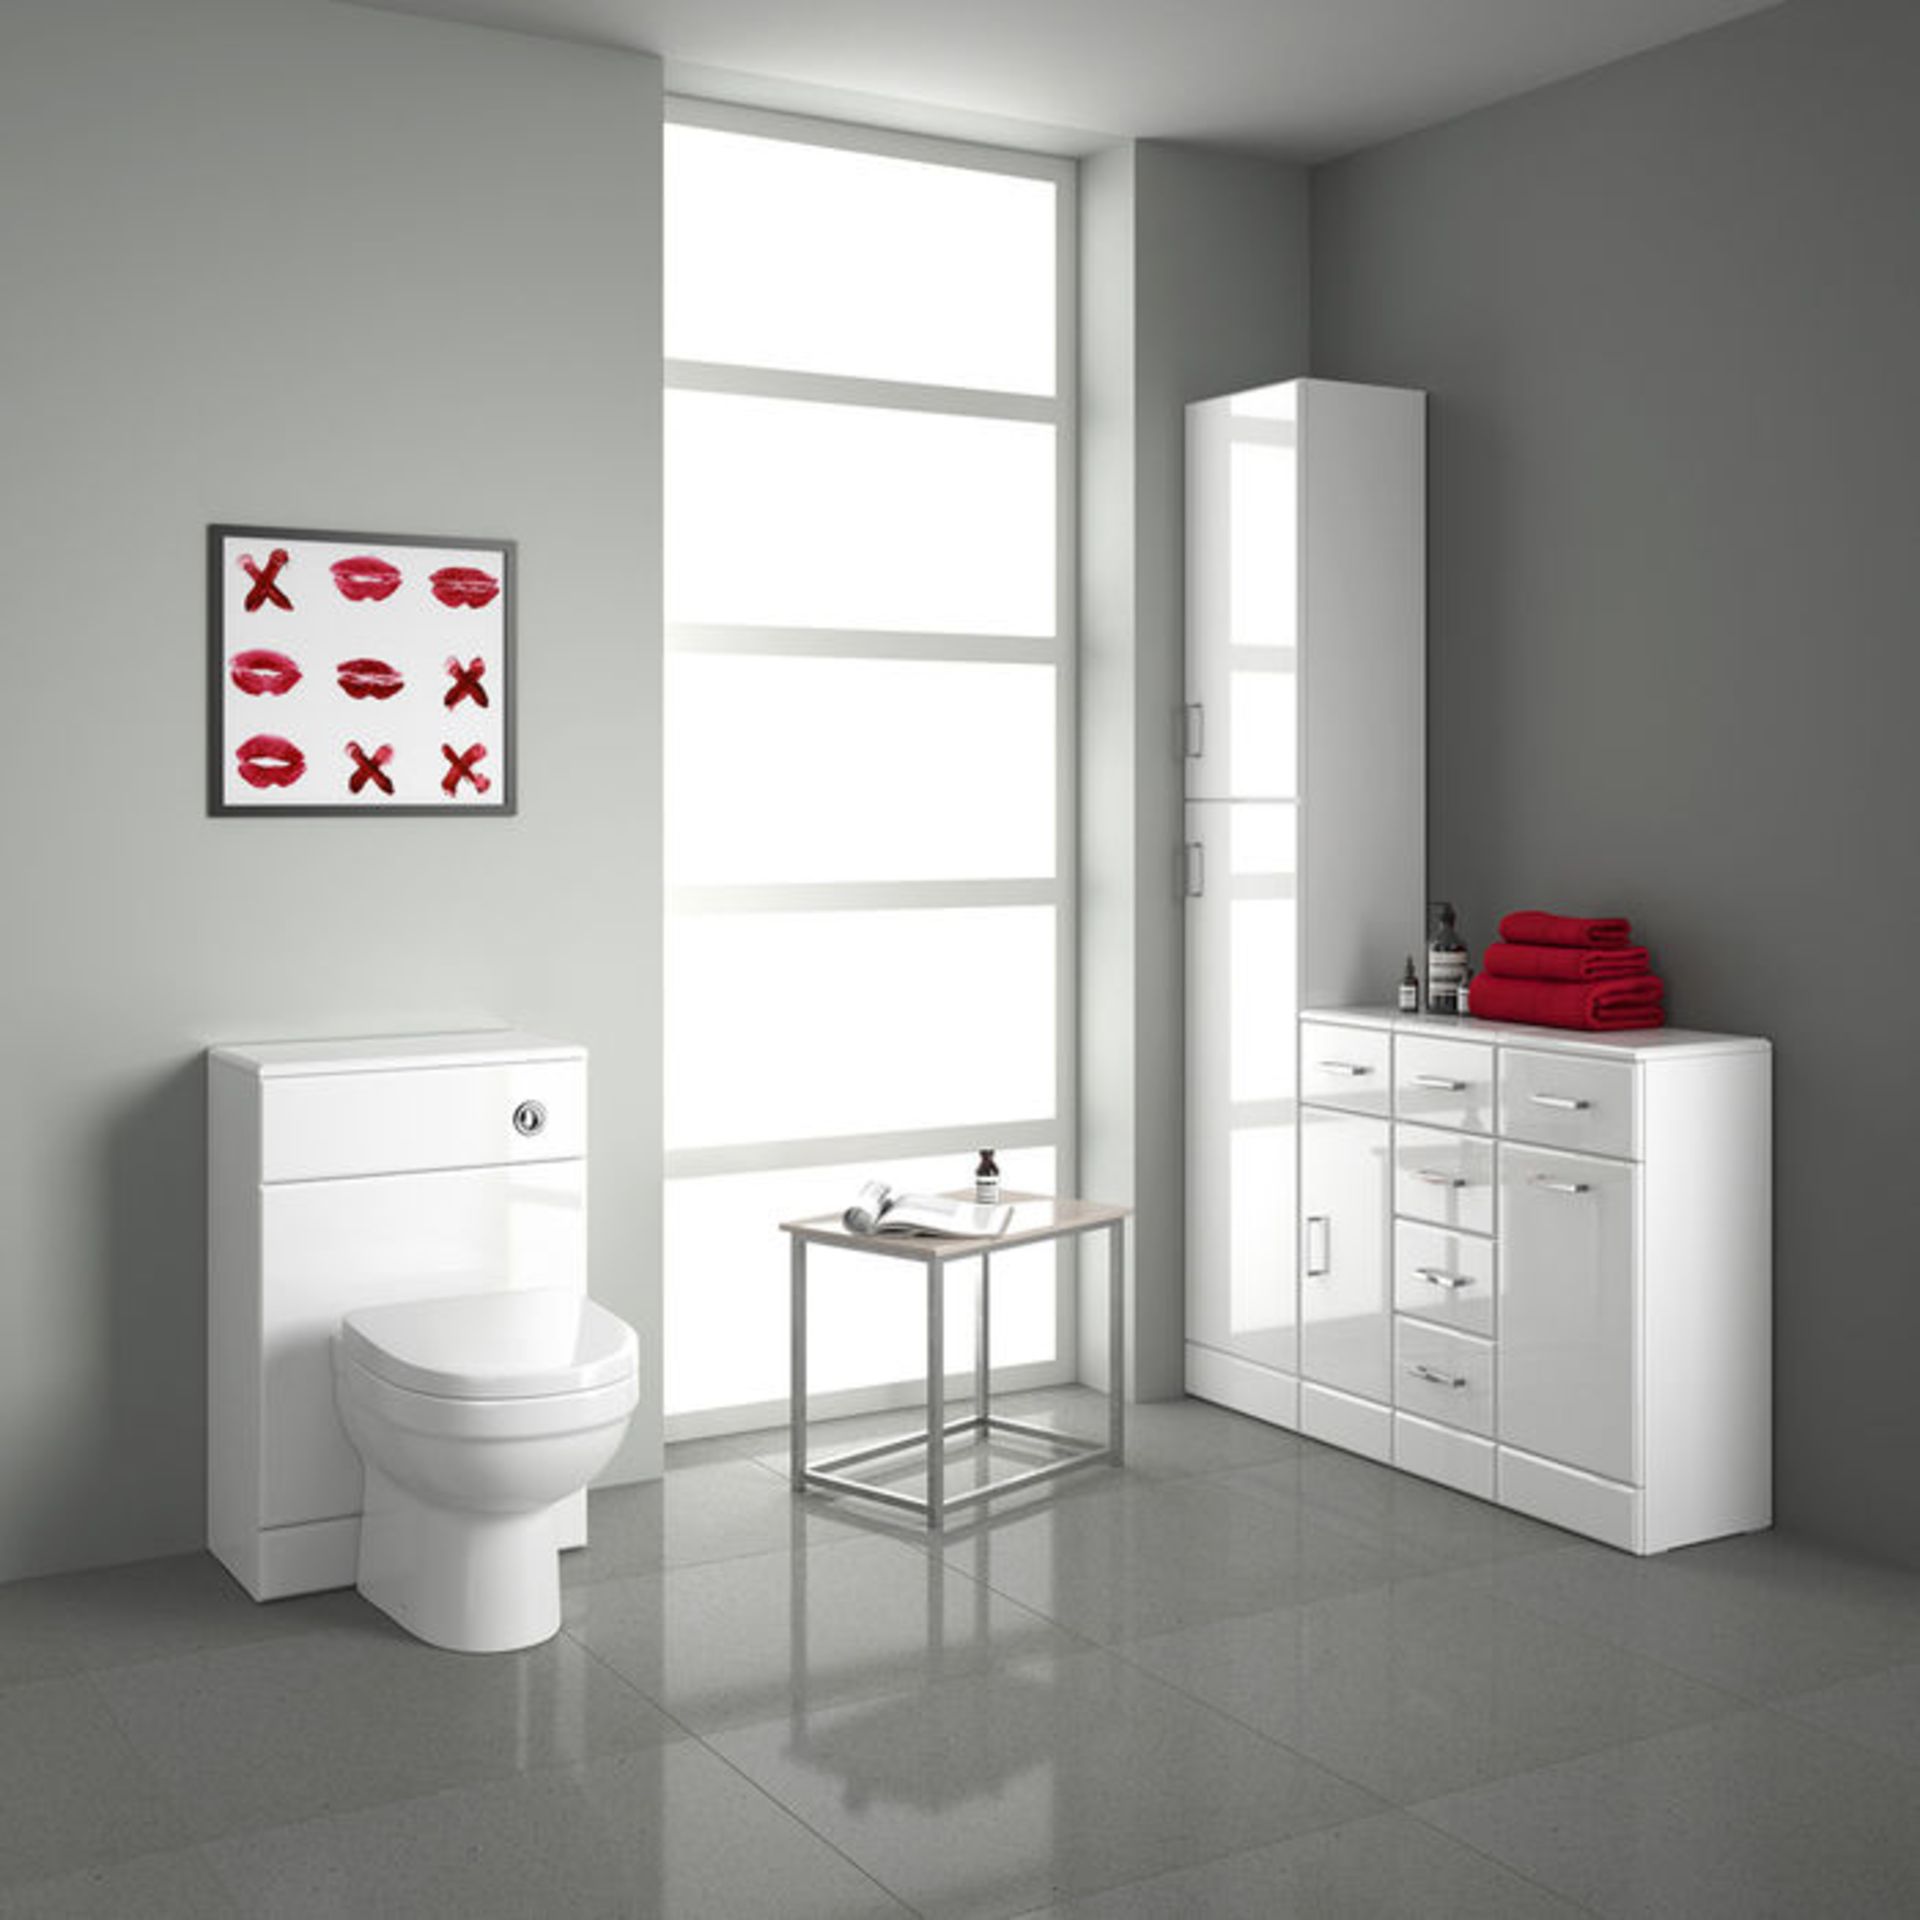 (GR26) 500x300mm Quartz Gloss White Back To Wall Toilet Unit £143.99 Pristine gloss white finish - Image 4 of 6